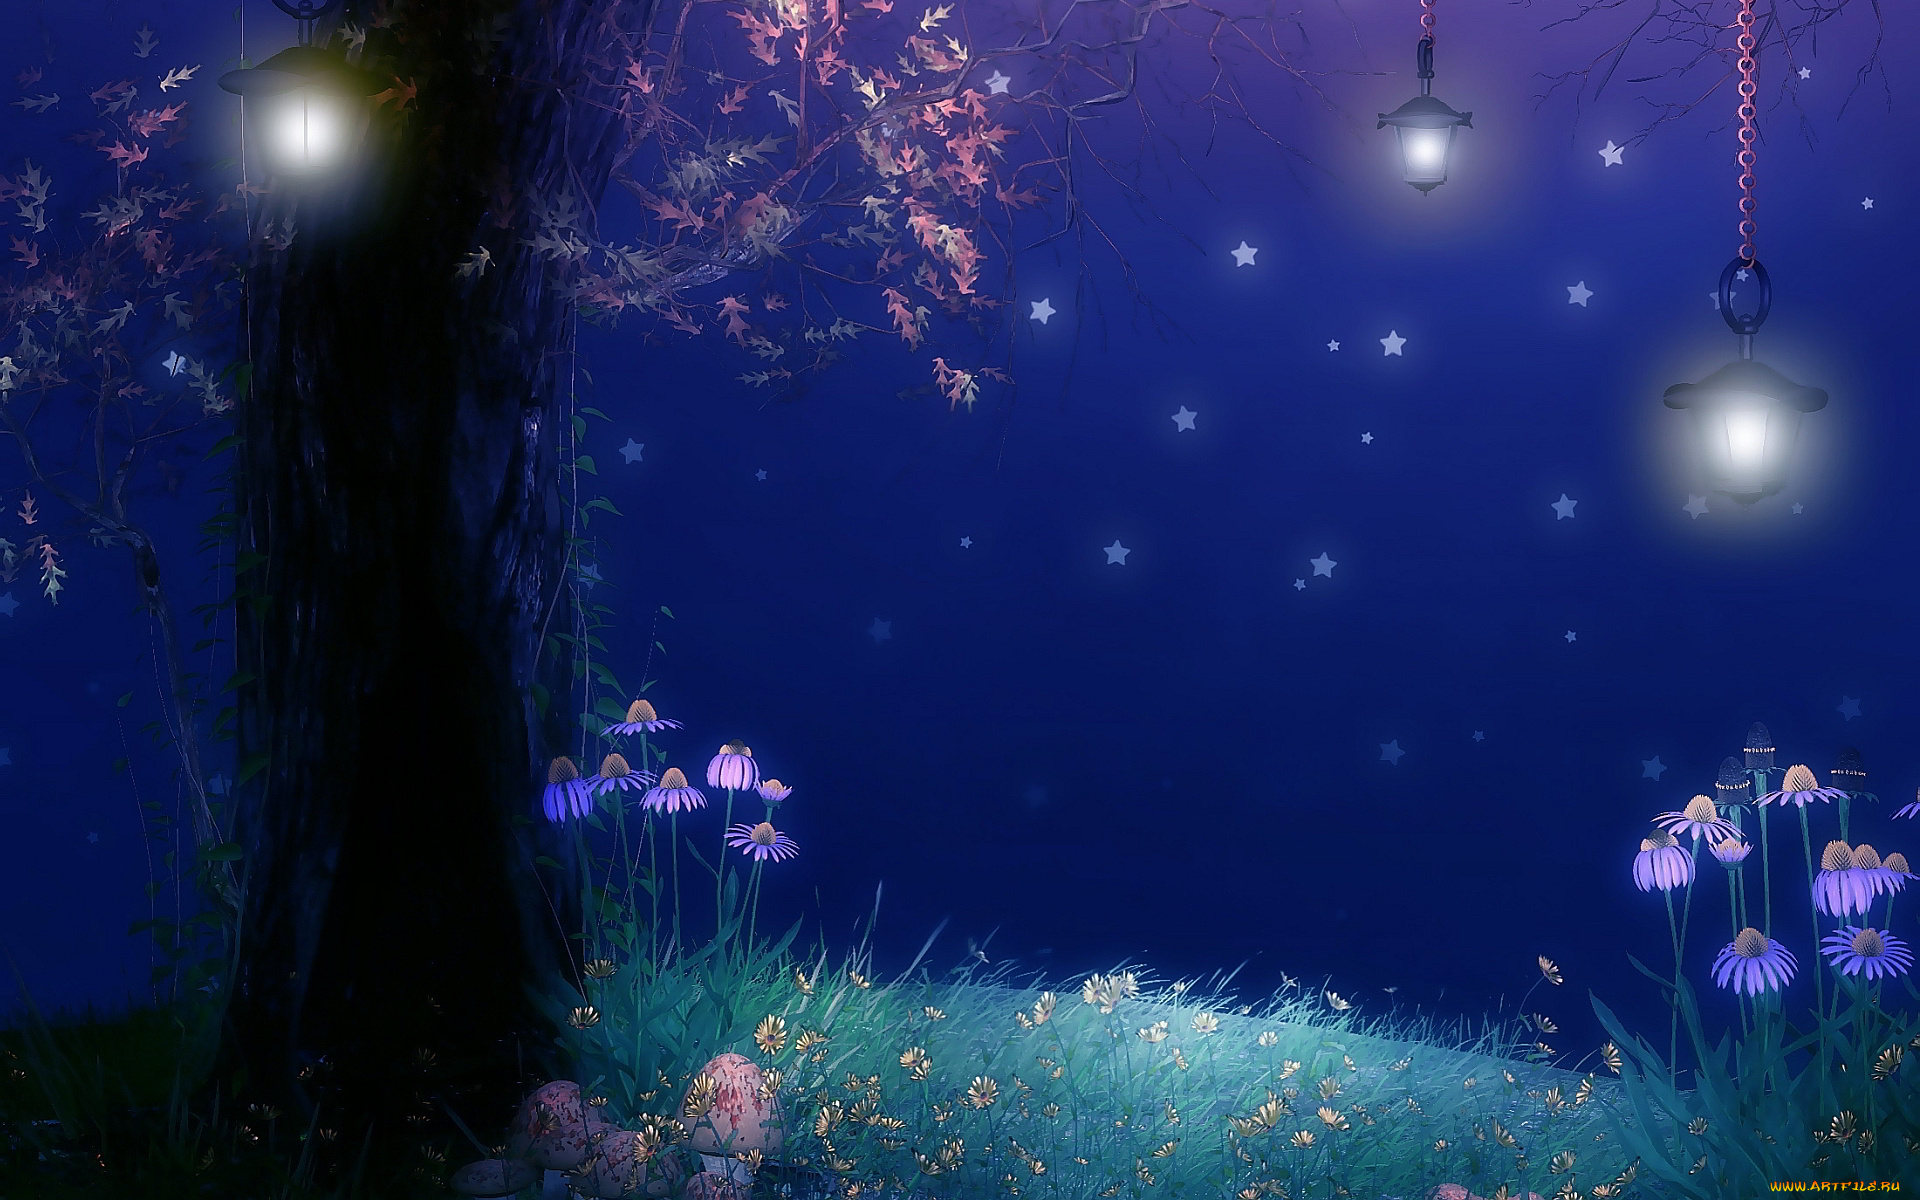 рисованное, природа, дерево, фонари, ночь, звезды, цветы